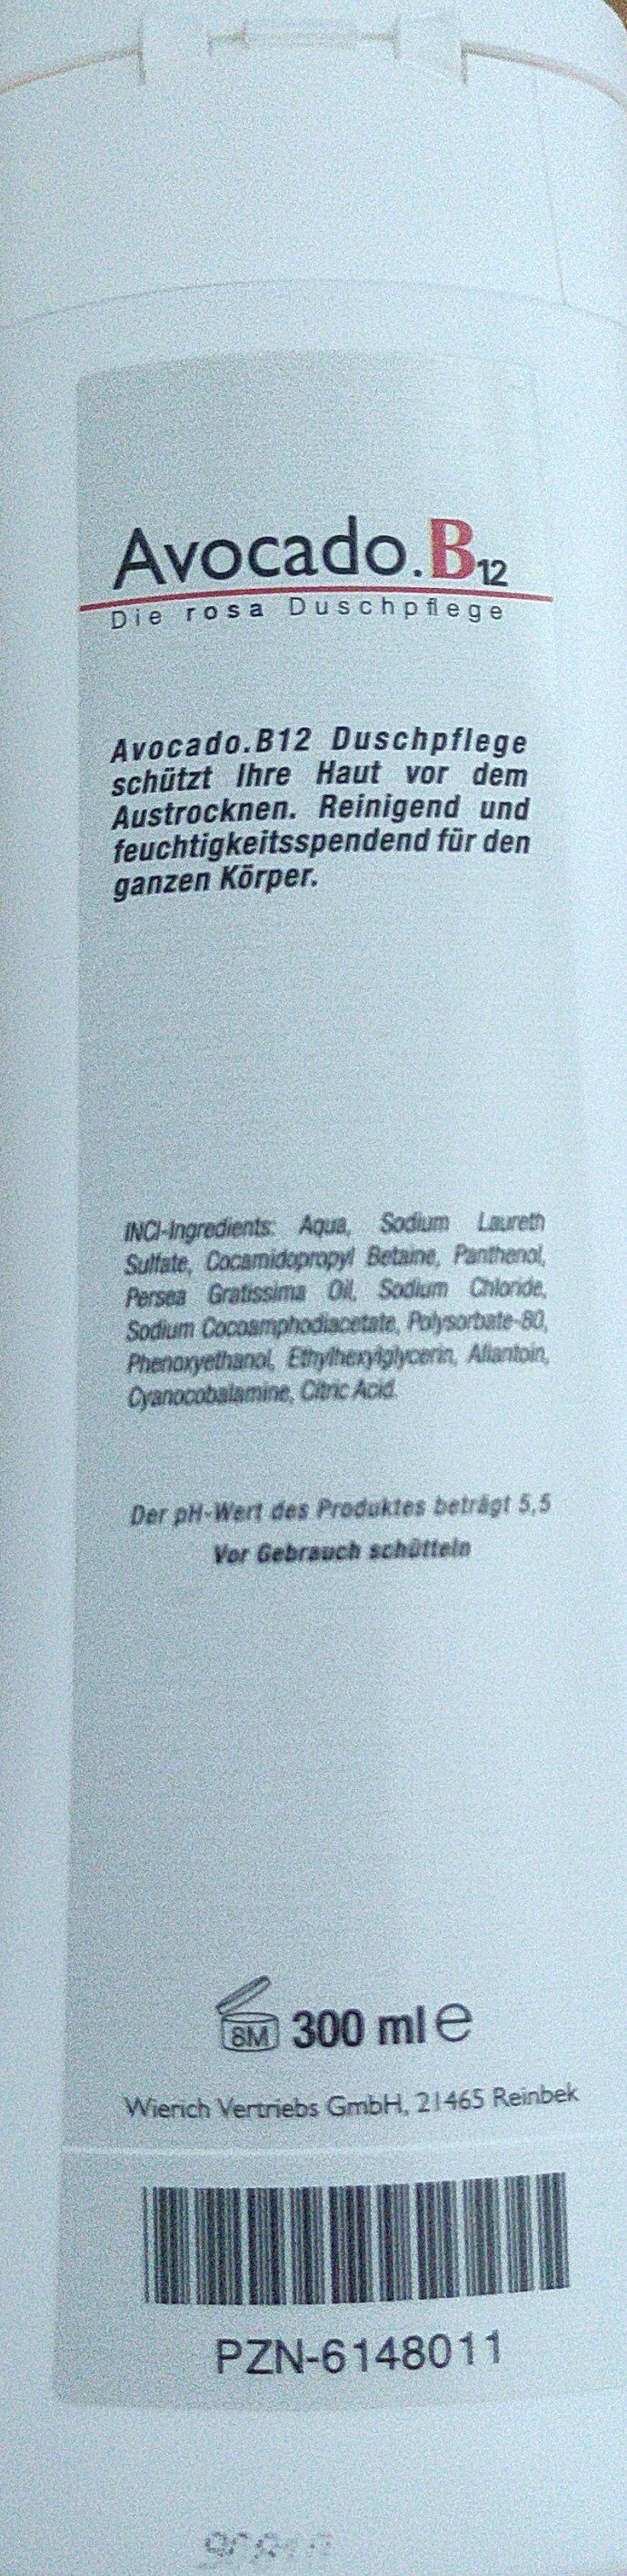 Avocado B12 Duschpflege - Produto - de